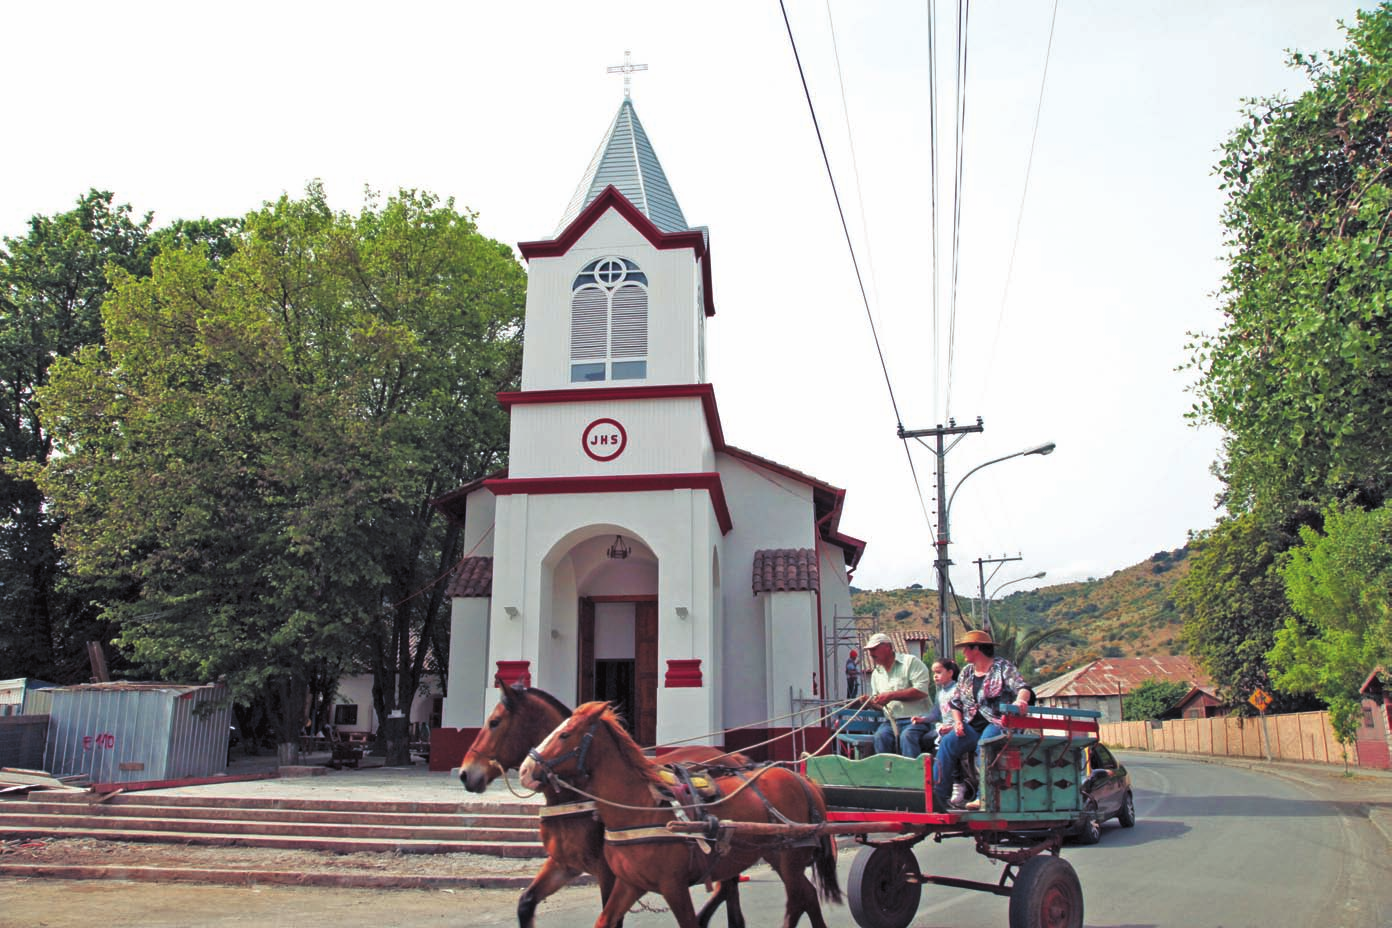 Los vecinos de la localidad de Guacarhue, en la comuna de Quinta de Tilcoco, recuperaron la parroquia Nuestra Señora del Rosario dañada por el 27F, gracias al programa Legado Bicentenario.